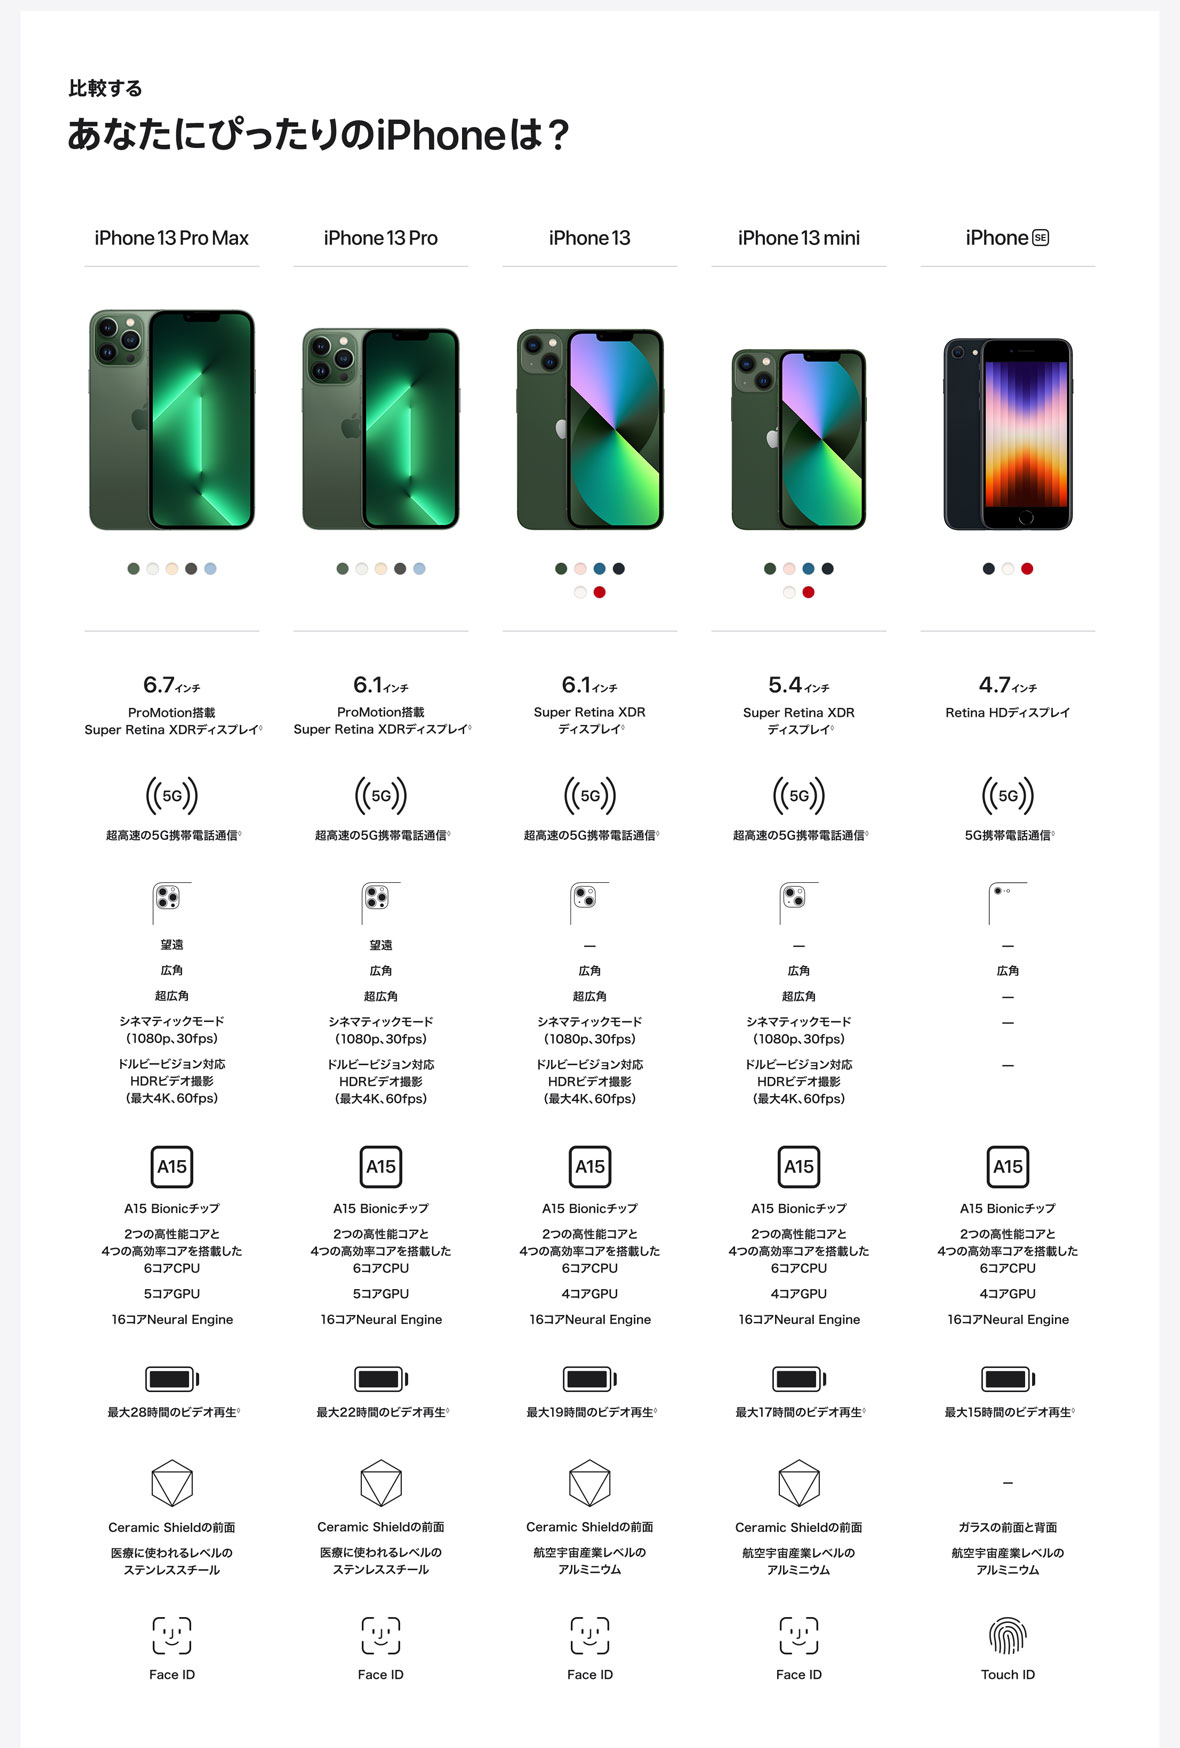 比較する あなたにぴったりのiPhoneは？ iPhone 13 Pro Max 6.7インチ ProMotion搭載 Super Retina XDRディスプレイ◊ 超高速の5G携帯電話通信◊ 望遠 広角 超広角 シネマティックモード（1080p、30fps） ドルビービジョン対応 HDRビデオ撮影 （最大4K、60fps） A15 Bionicチップ 2つの高性能コアと4つの高効率コアを搭載した6コアCPU 最大28時間のビデオ再生◊ Ceramic Shieldの前面 医療に使われるレベルのステンレススチール Face ID iPhone 13 Pro 6.1インチ ProMotion搭載 Super Retina XDRディスプレイ◊ 5コアGPU 16コアNeural Engine 望遠 広角 超広角 シネマティックモード（1080p、30fps） ドルビービジョン対応 HDRビデオ撮影 （最大4K、60fps） A15 Bionicチップ 2つの高性能コアと4つの高効率コアを搭載した6コアCPU 5コアGPU 16コアNeural Engine 最大22時間のビデオ再生◊ Ceramic Shieldの前面 医療に使われるレベルのステンレススチール Face ID iPhone 13 6.1インチ Super Retina XDR ディスプレイ◊ 超高速の5G携帯電話通信◊ 広角 超広角 シネマティックモード（1080p、30fps） ドルビービジョン対応 HDRビデオ撮影（最大4K、60fps） A15 Bionicチップ 2つの高性能コアと4つの高効率コアを搭載した6コアCPU 4コアGPU 16コアNeural Engine 最大19時間のビデオ再生◊ Ceramic Shieldの前面 航空宇宙産業レベルのアルミニウム Face ID iPhone 13 mini 5.4インチ Super Retina XDR ディスプレイ◊ 超高速の5G携帯電話通信◊  広角 超広角 シネマティックモード（1080p、30fps） ドルビービジョン対応 HDRビデオ撮影（最大4K、60fps） A15 Bionicチップ 2つの高性能コアと4つの高効率コアを搭載した6コアCPU 4コアGPU 16コアNeural Engine 最大17時間のビデオ再生◊ Ceramic Shieldの前面 航空宇宙産業レベルのアルミニウム Face ID iPhone SE 4.7インチ Retina HDディスプレイ 5G携帯電話通信◊ 広角 A15 Bionicチップ 2つの高性能コアと4つの高効率コアを搭載した6コアCPU 4コアGPU 16コアNeural Engine 最大15時間のビデオ再生◊ ガラスの前面と背面 航空宇宙産業レベルのアルミニウム Touch ID